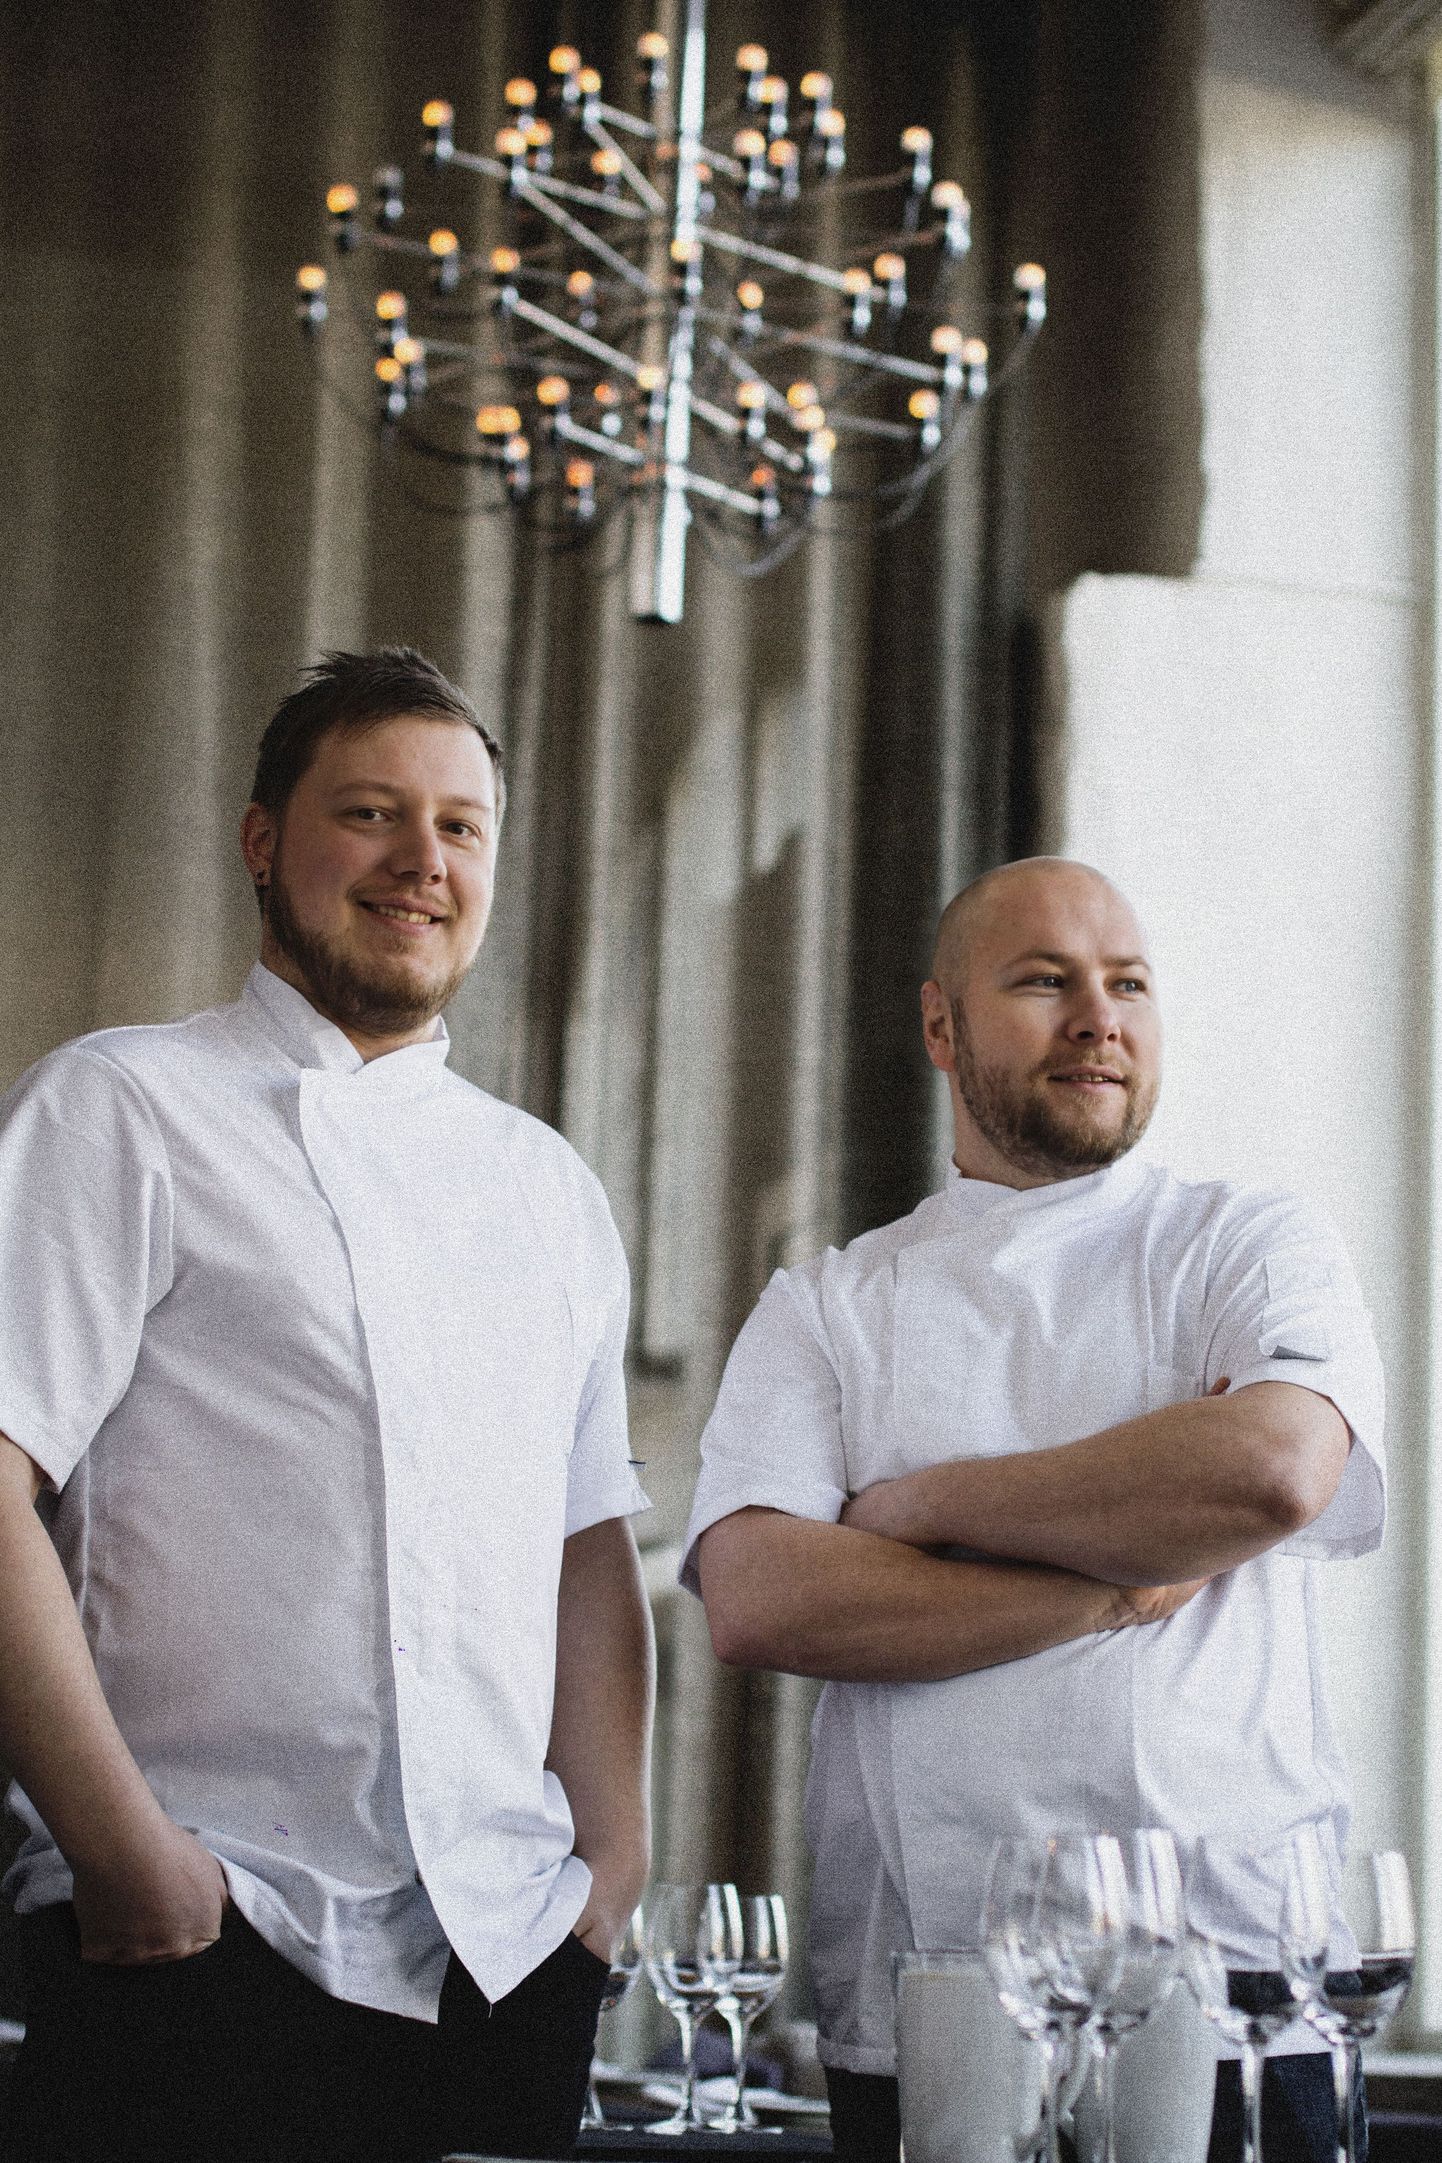 Kaks kokka: Ranno Paukson (vasakul) ja Martin Meikas, kes juhivad Ö ja Kahe Koka ühist kööki.